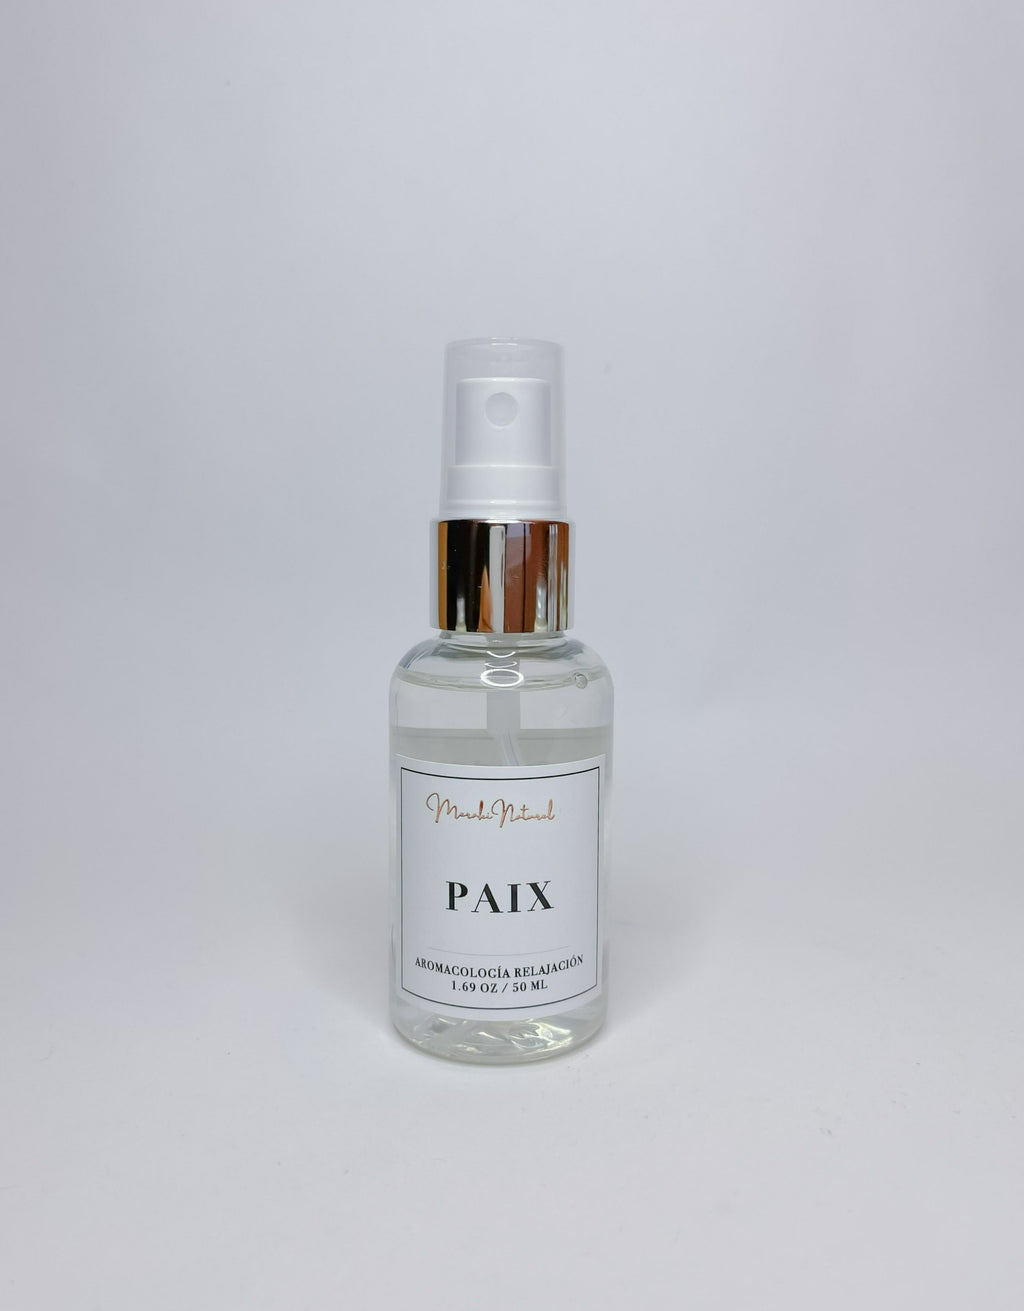 Paix (Aromacología Relajación)